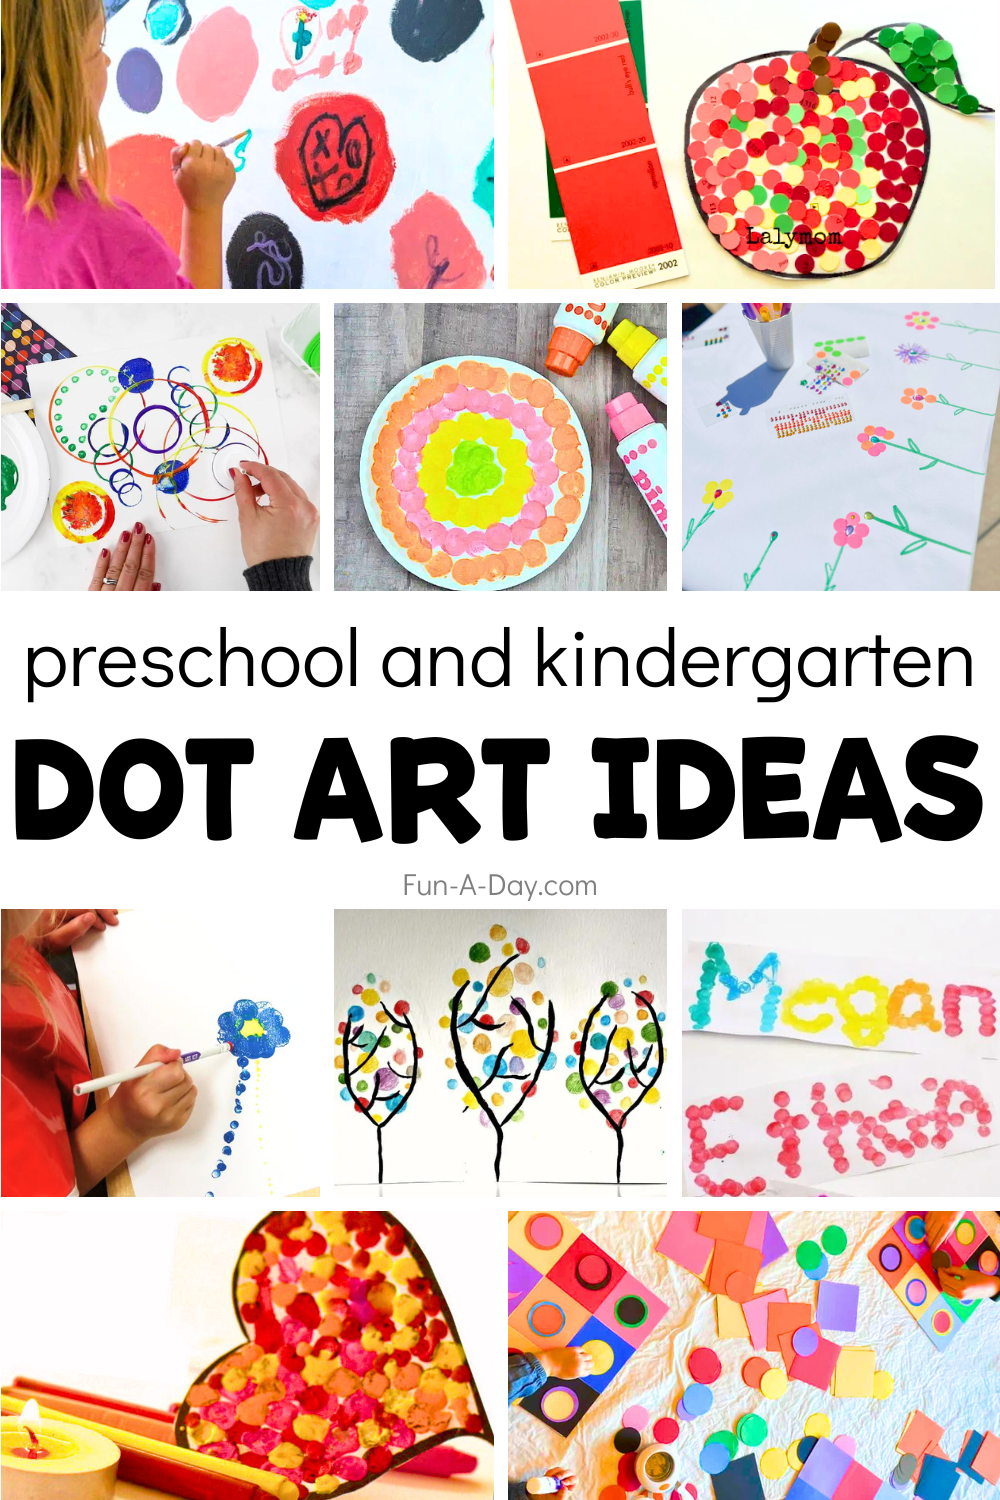 10 dot art ideas with text that reads preschool and kindergarten dot art ideas.